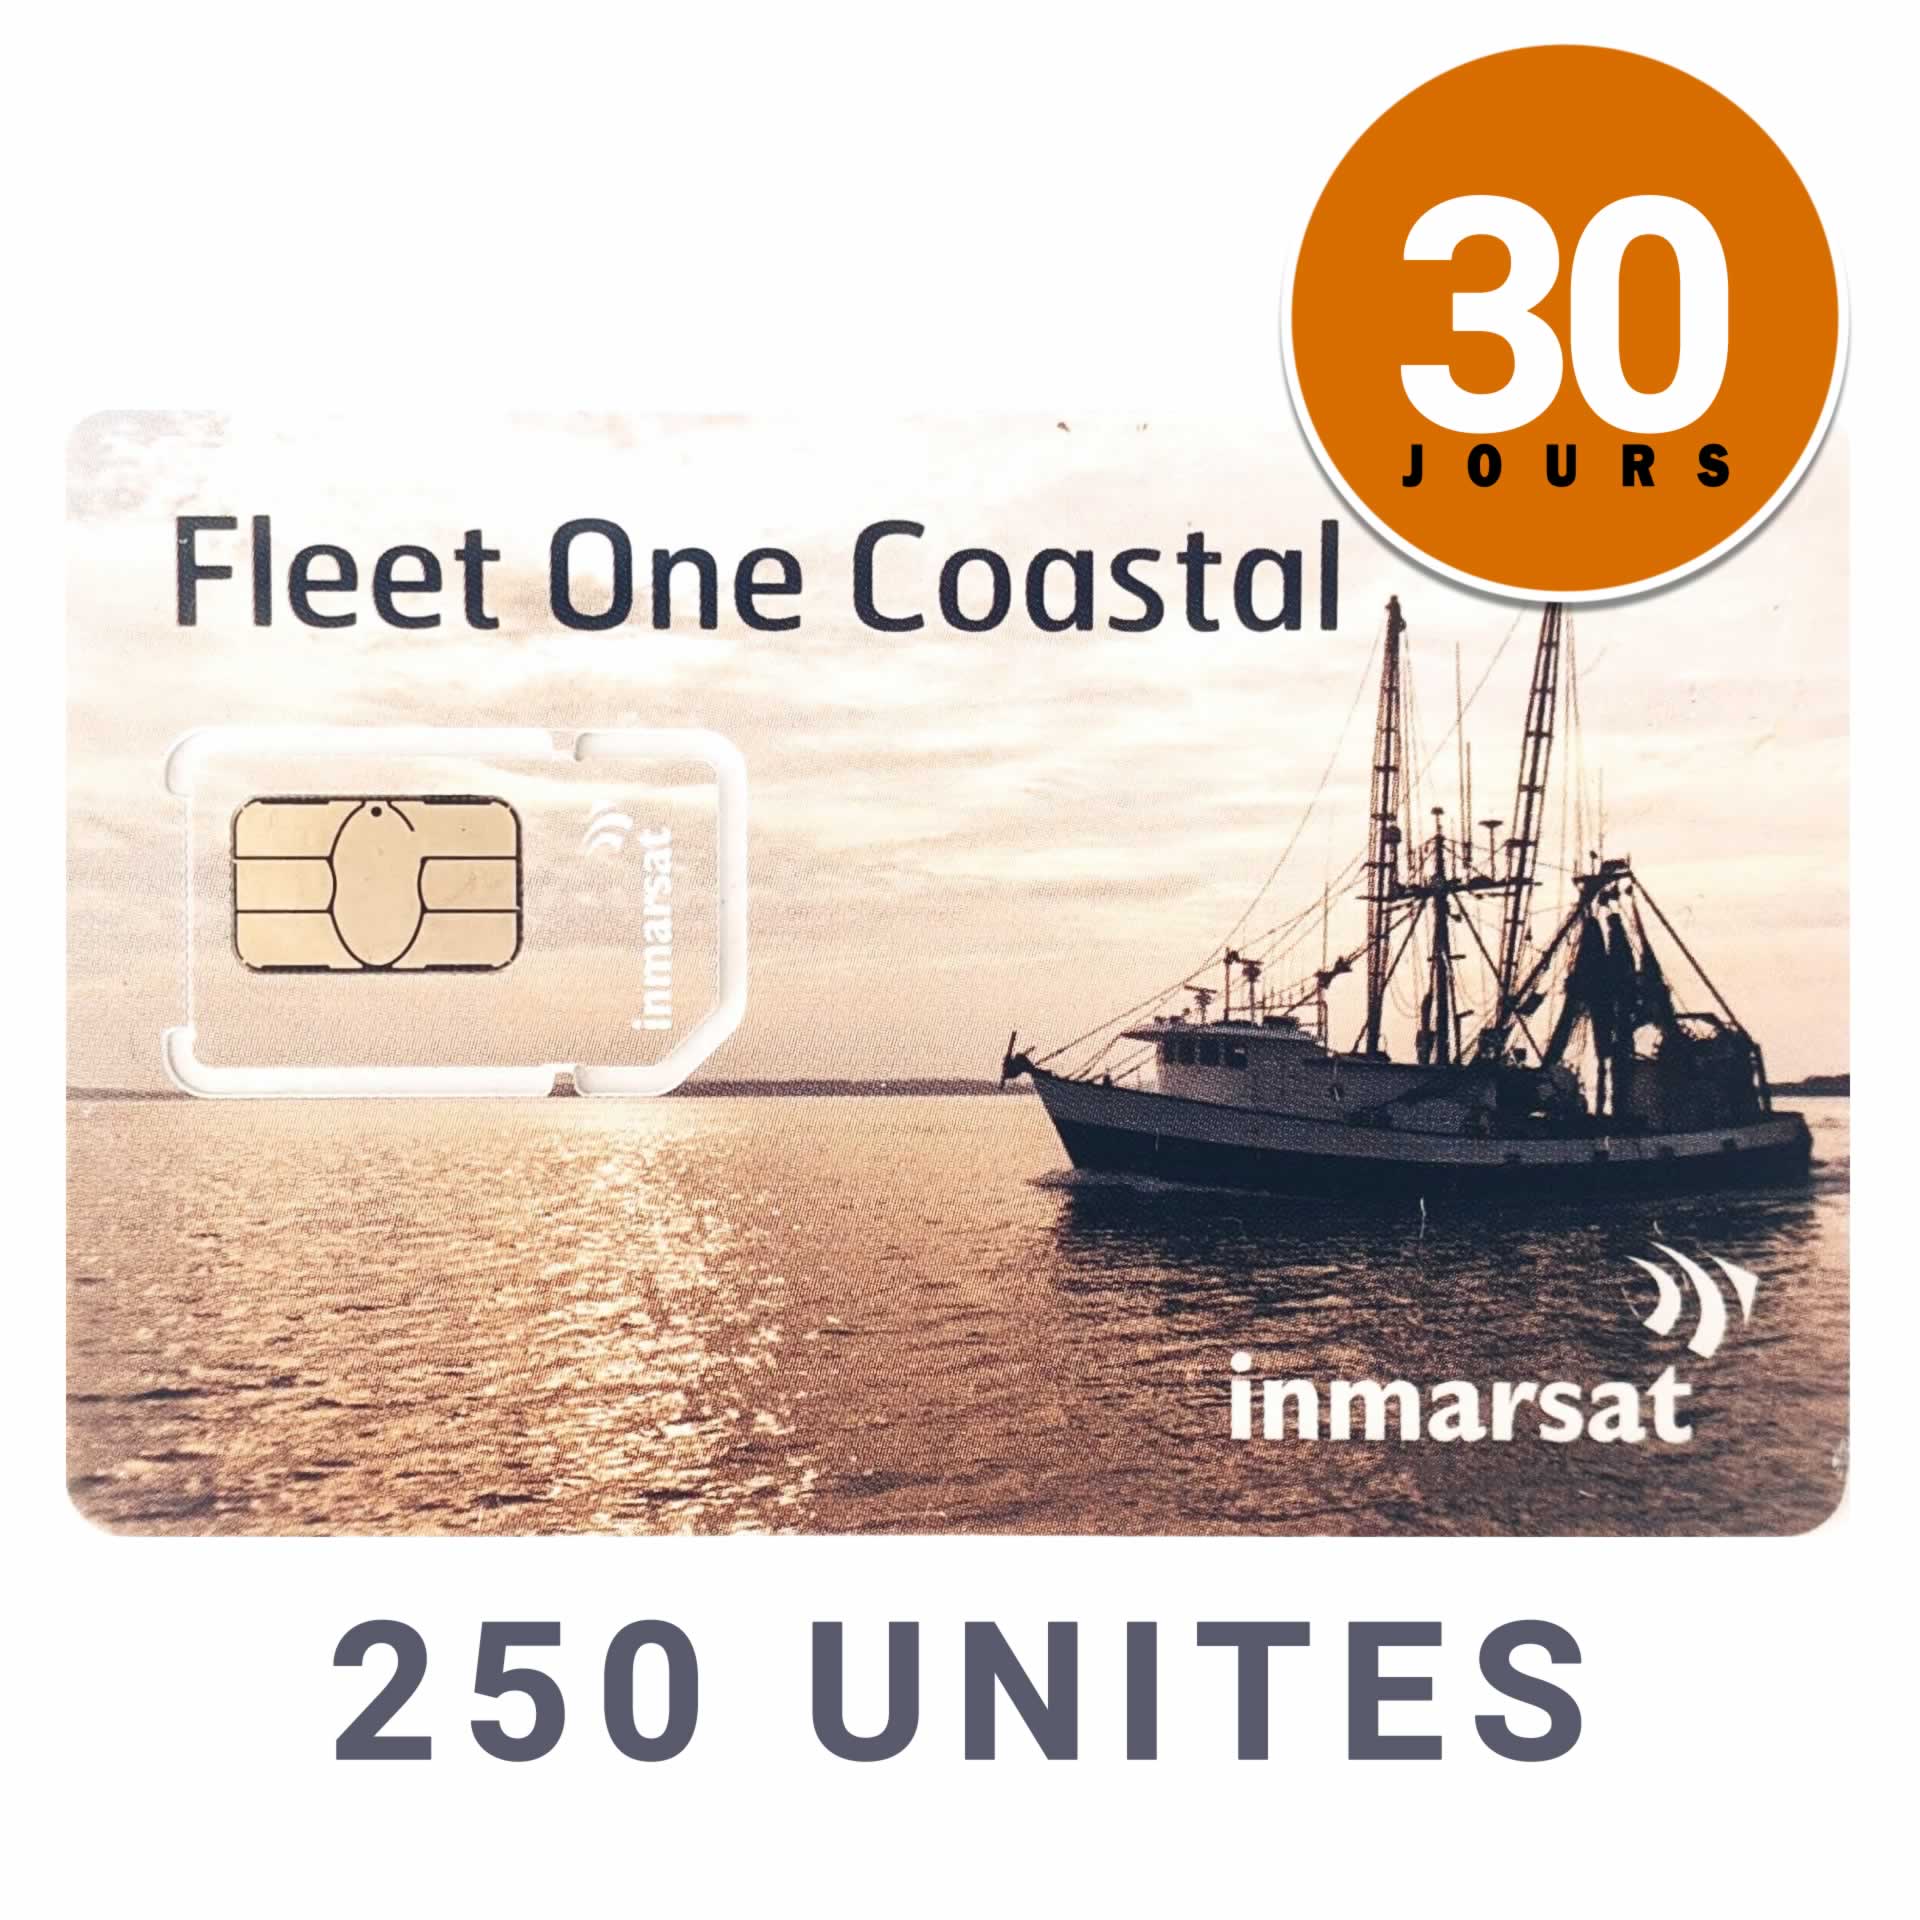 INMARSAT Prepaid Card CÔTIER FLEET ONE - 250 UNITS - 30 DAYS